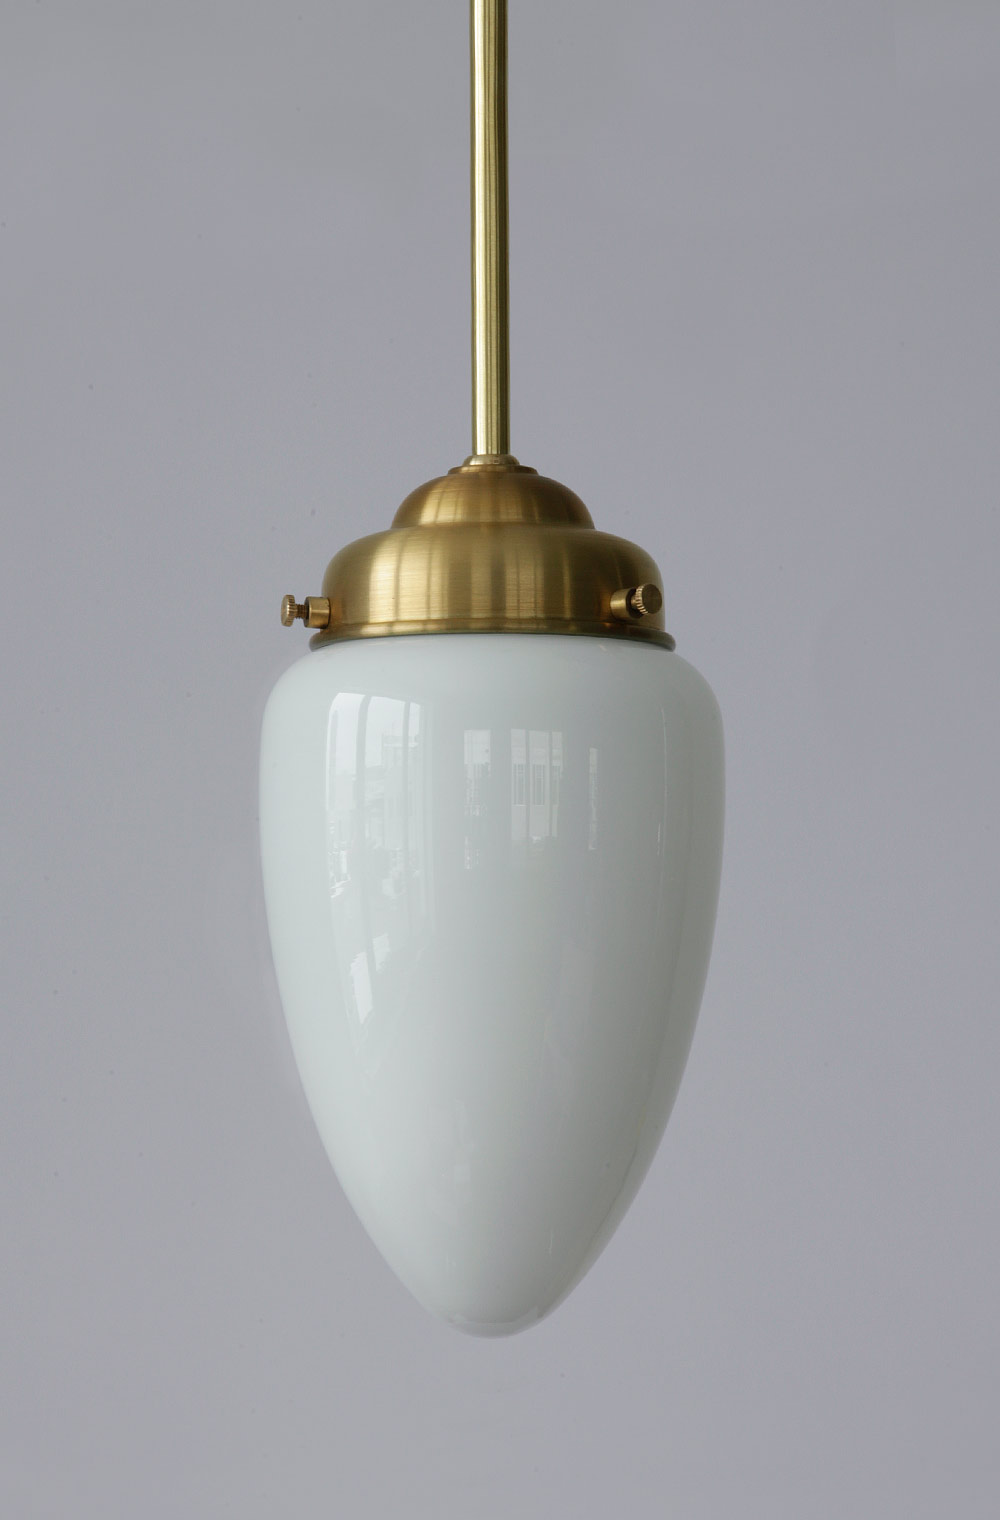 Stab-Pendelleuchte mit Zapfen-Opalglas: Stab-Pendelleuchte mit zapfenförmigem Opalglas, hier in Messing natur